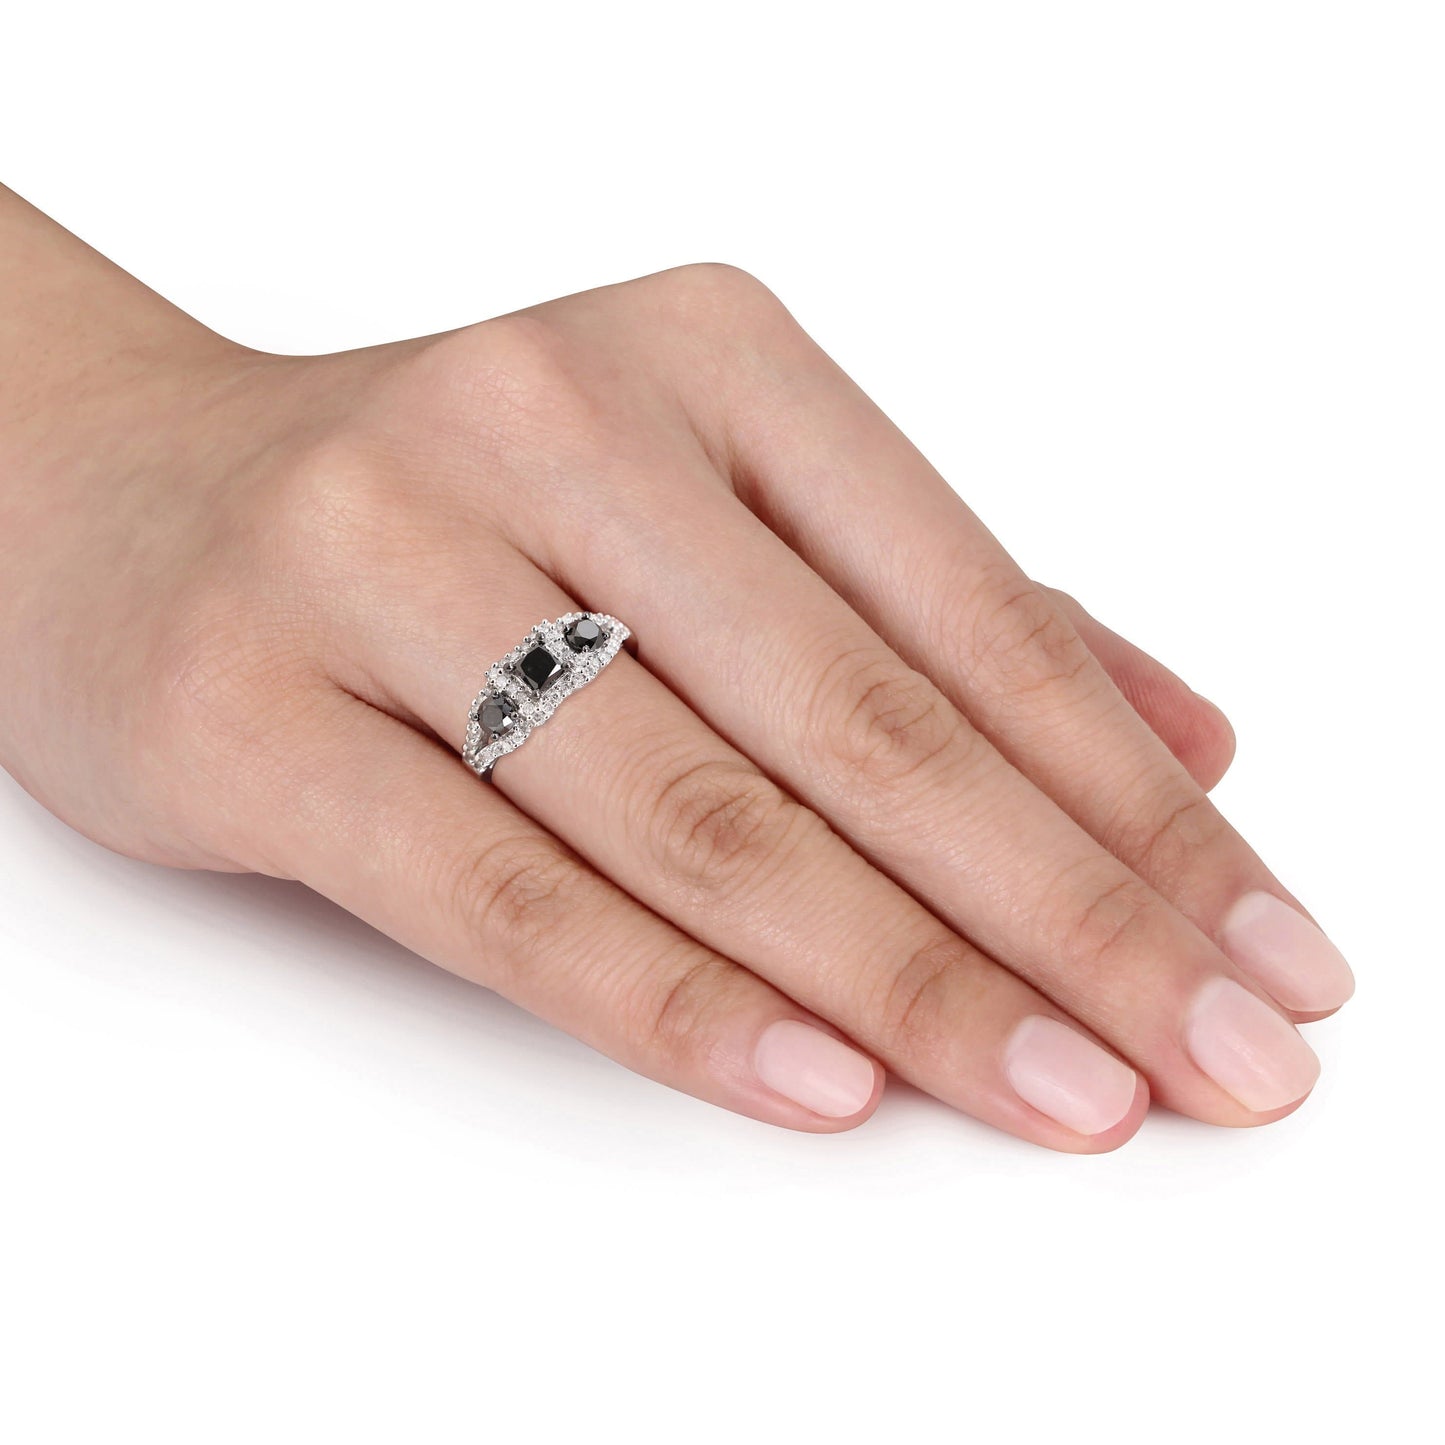 Sophia B 3-Stone Black & White Diamond Ring in 10k White Gold